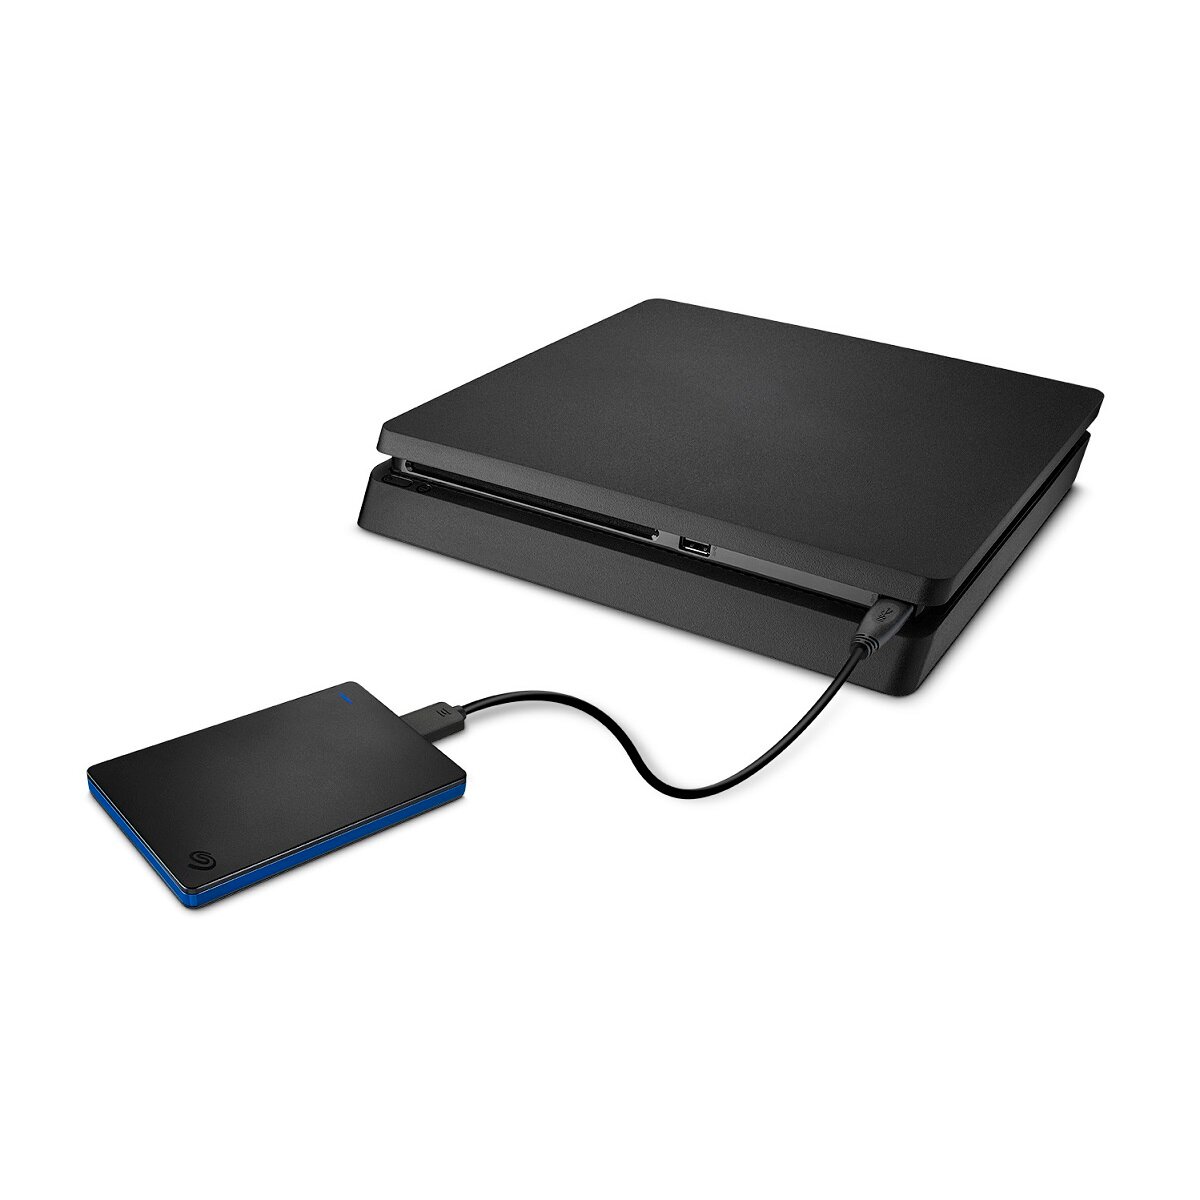 Dysk do konsoli PS4 Seagate Game Drive 4TB przenośny na białym tle podłączony do konsoli Playstation 4 widoczne lekko z boku